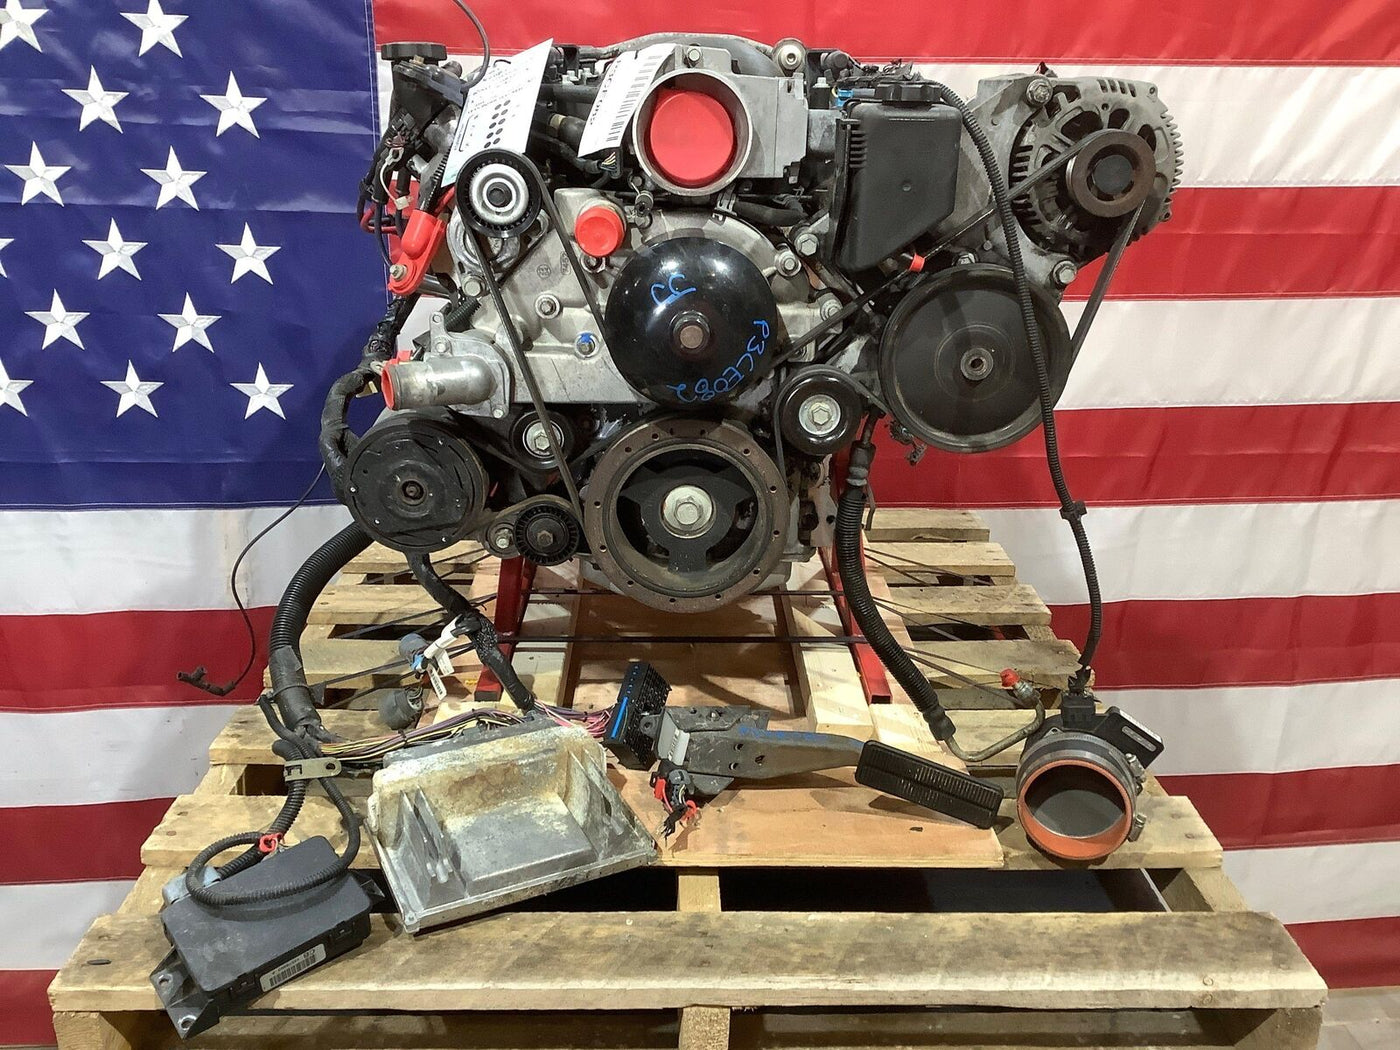 Chevy Corvette C5 LS1 5.7L V8 Engine Swap Donor Dropout (LS1) Hot Rod Swap 102K